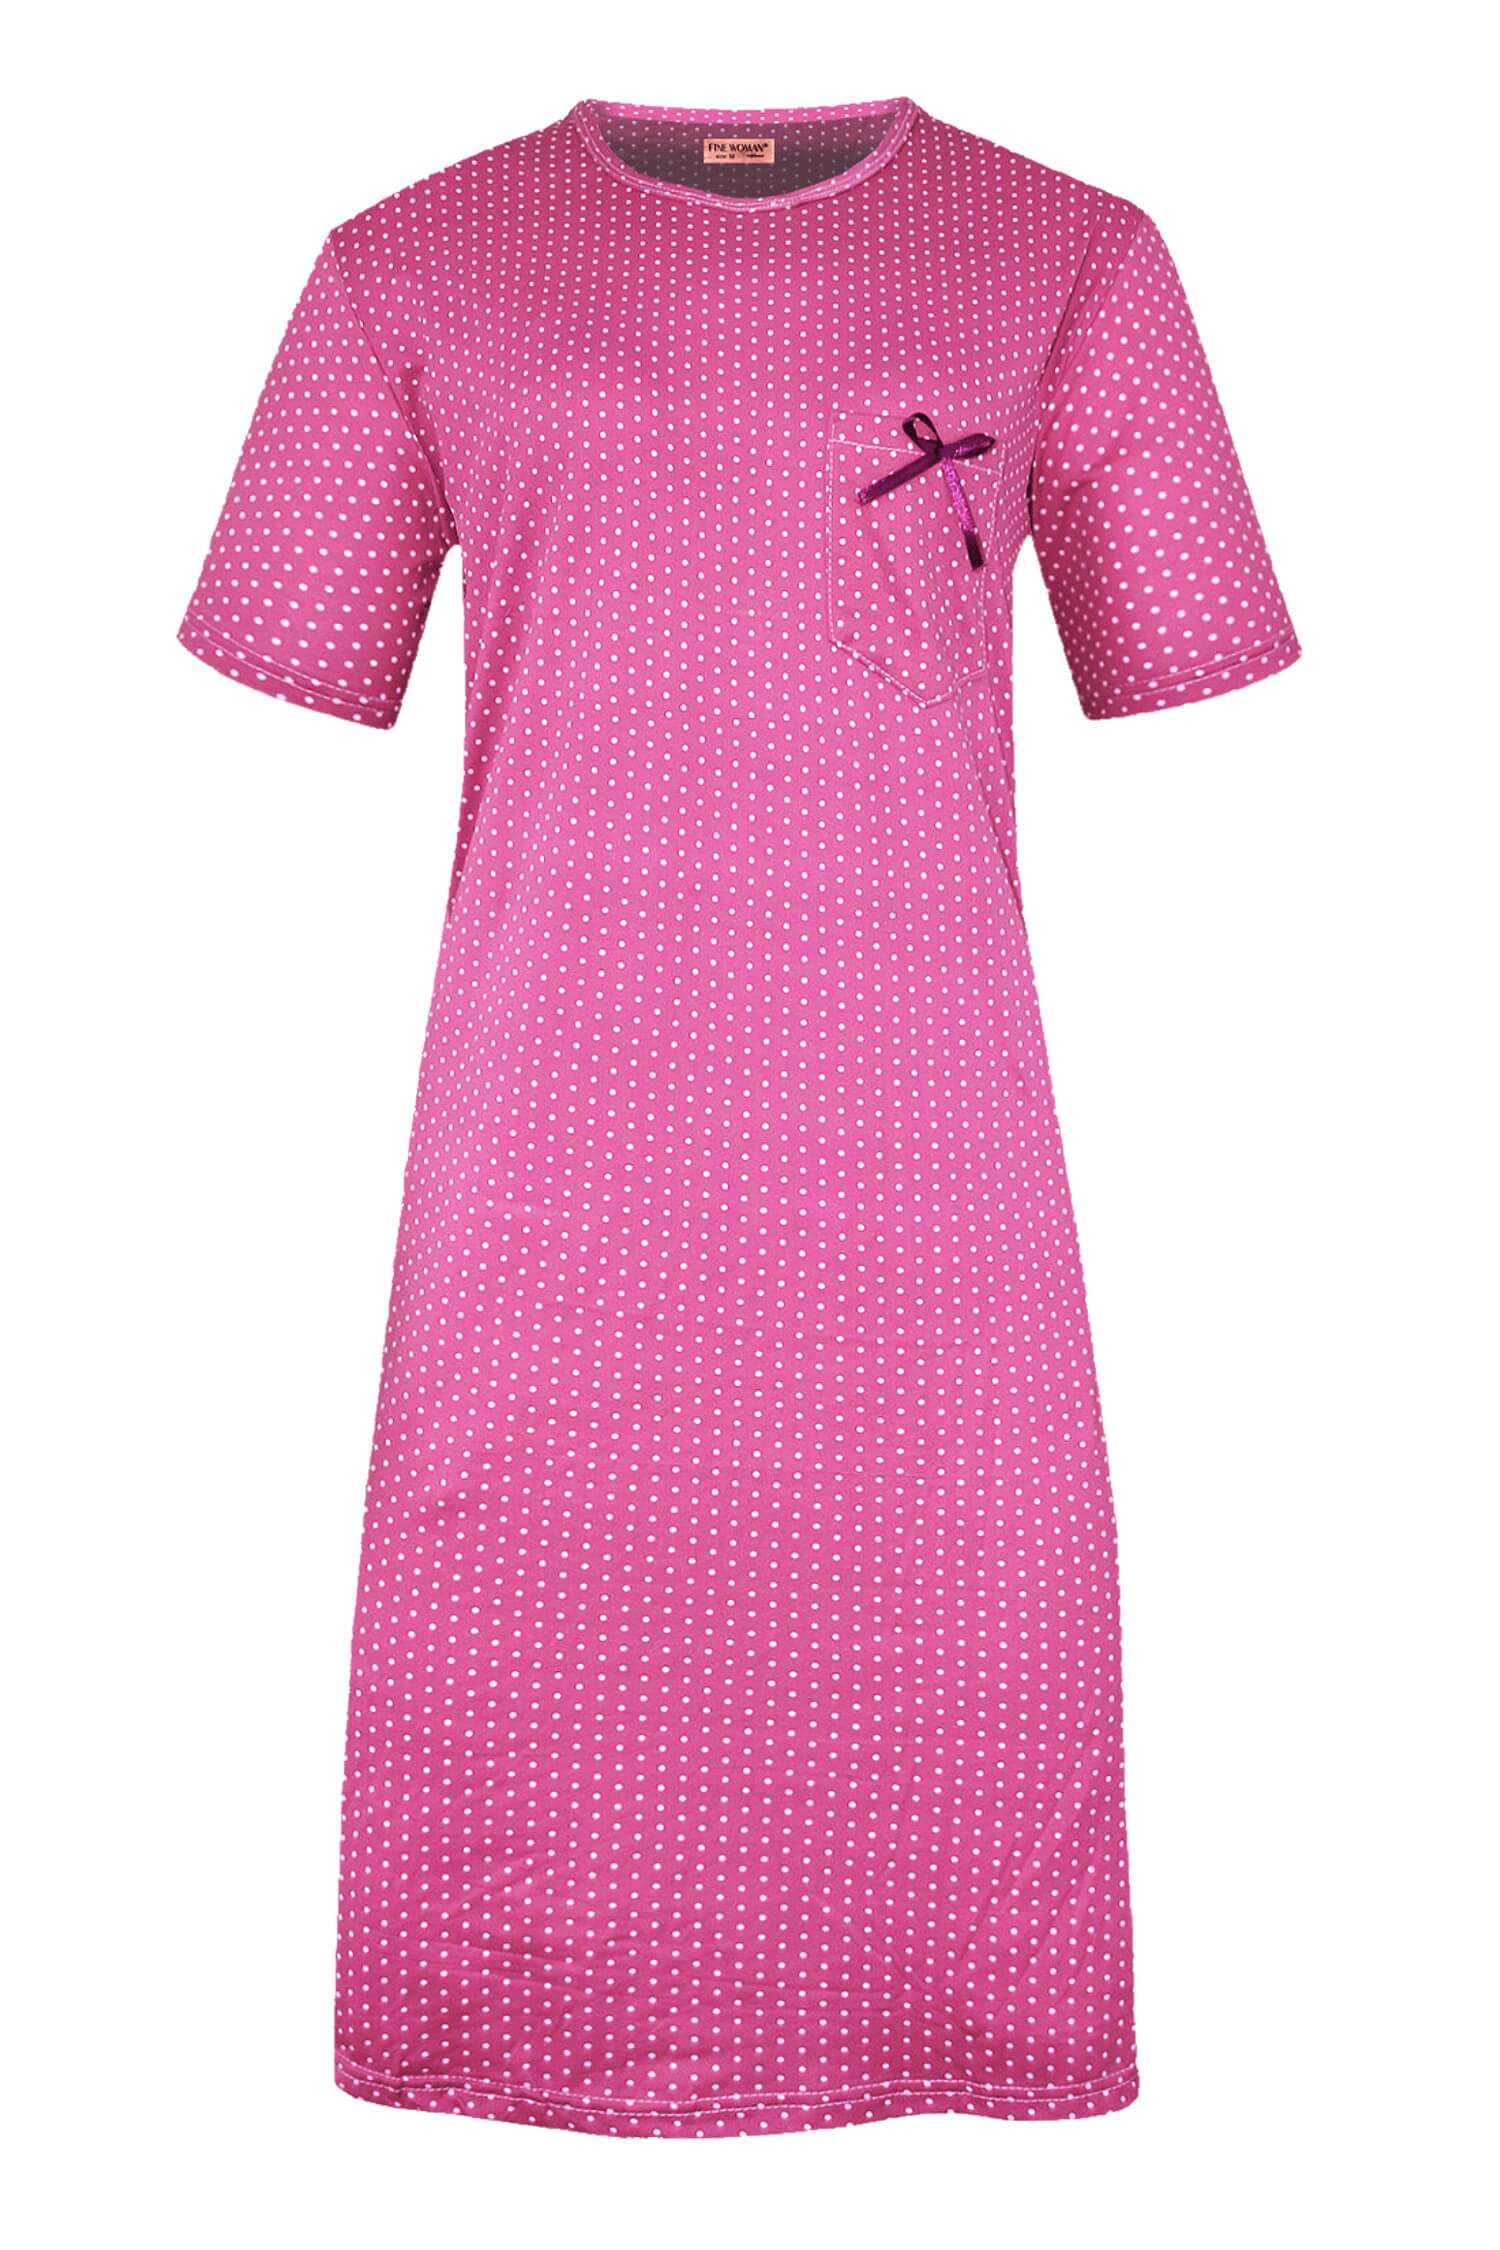 Monika dámská noční košile s puntíky 6533 XL tmavě růžová